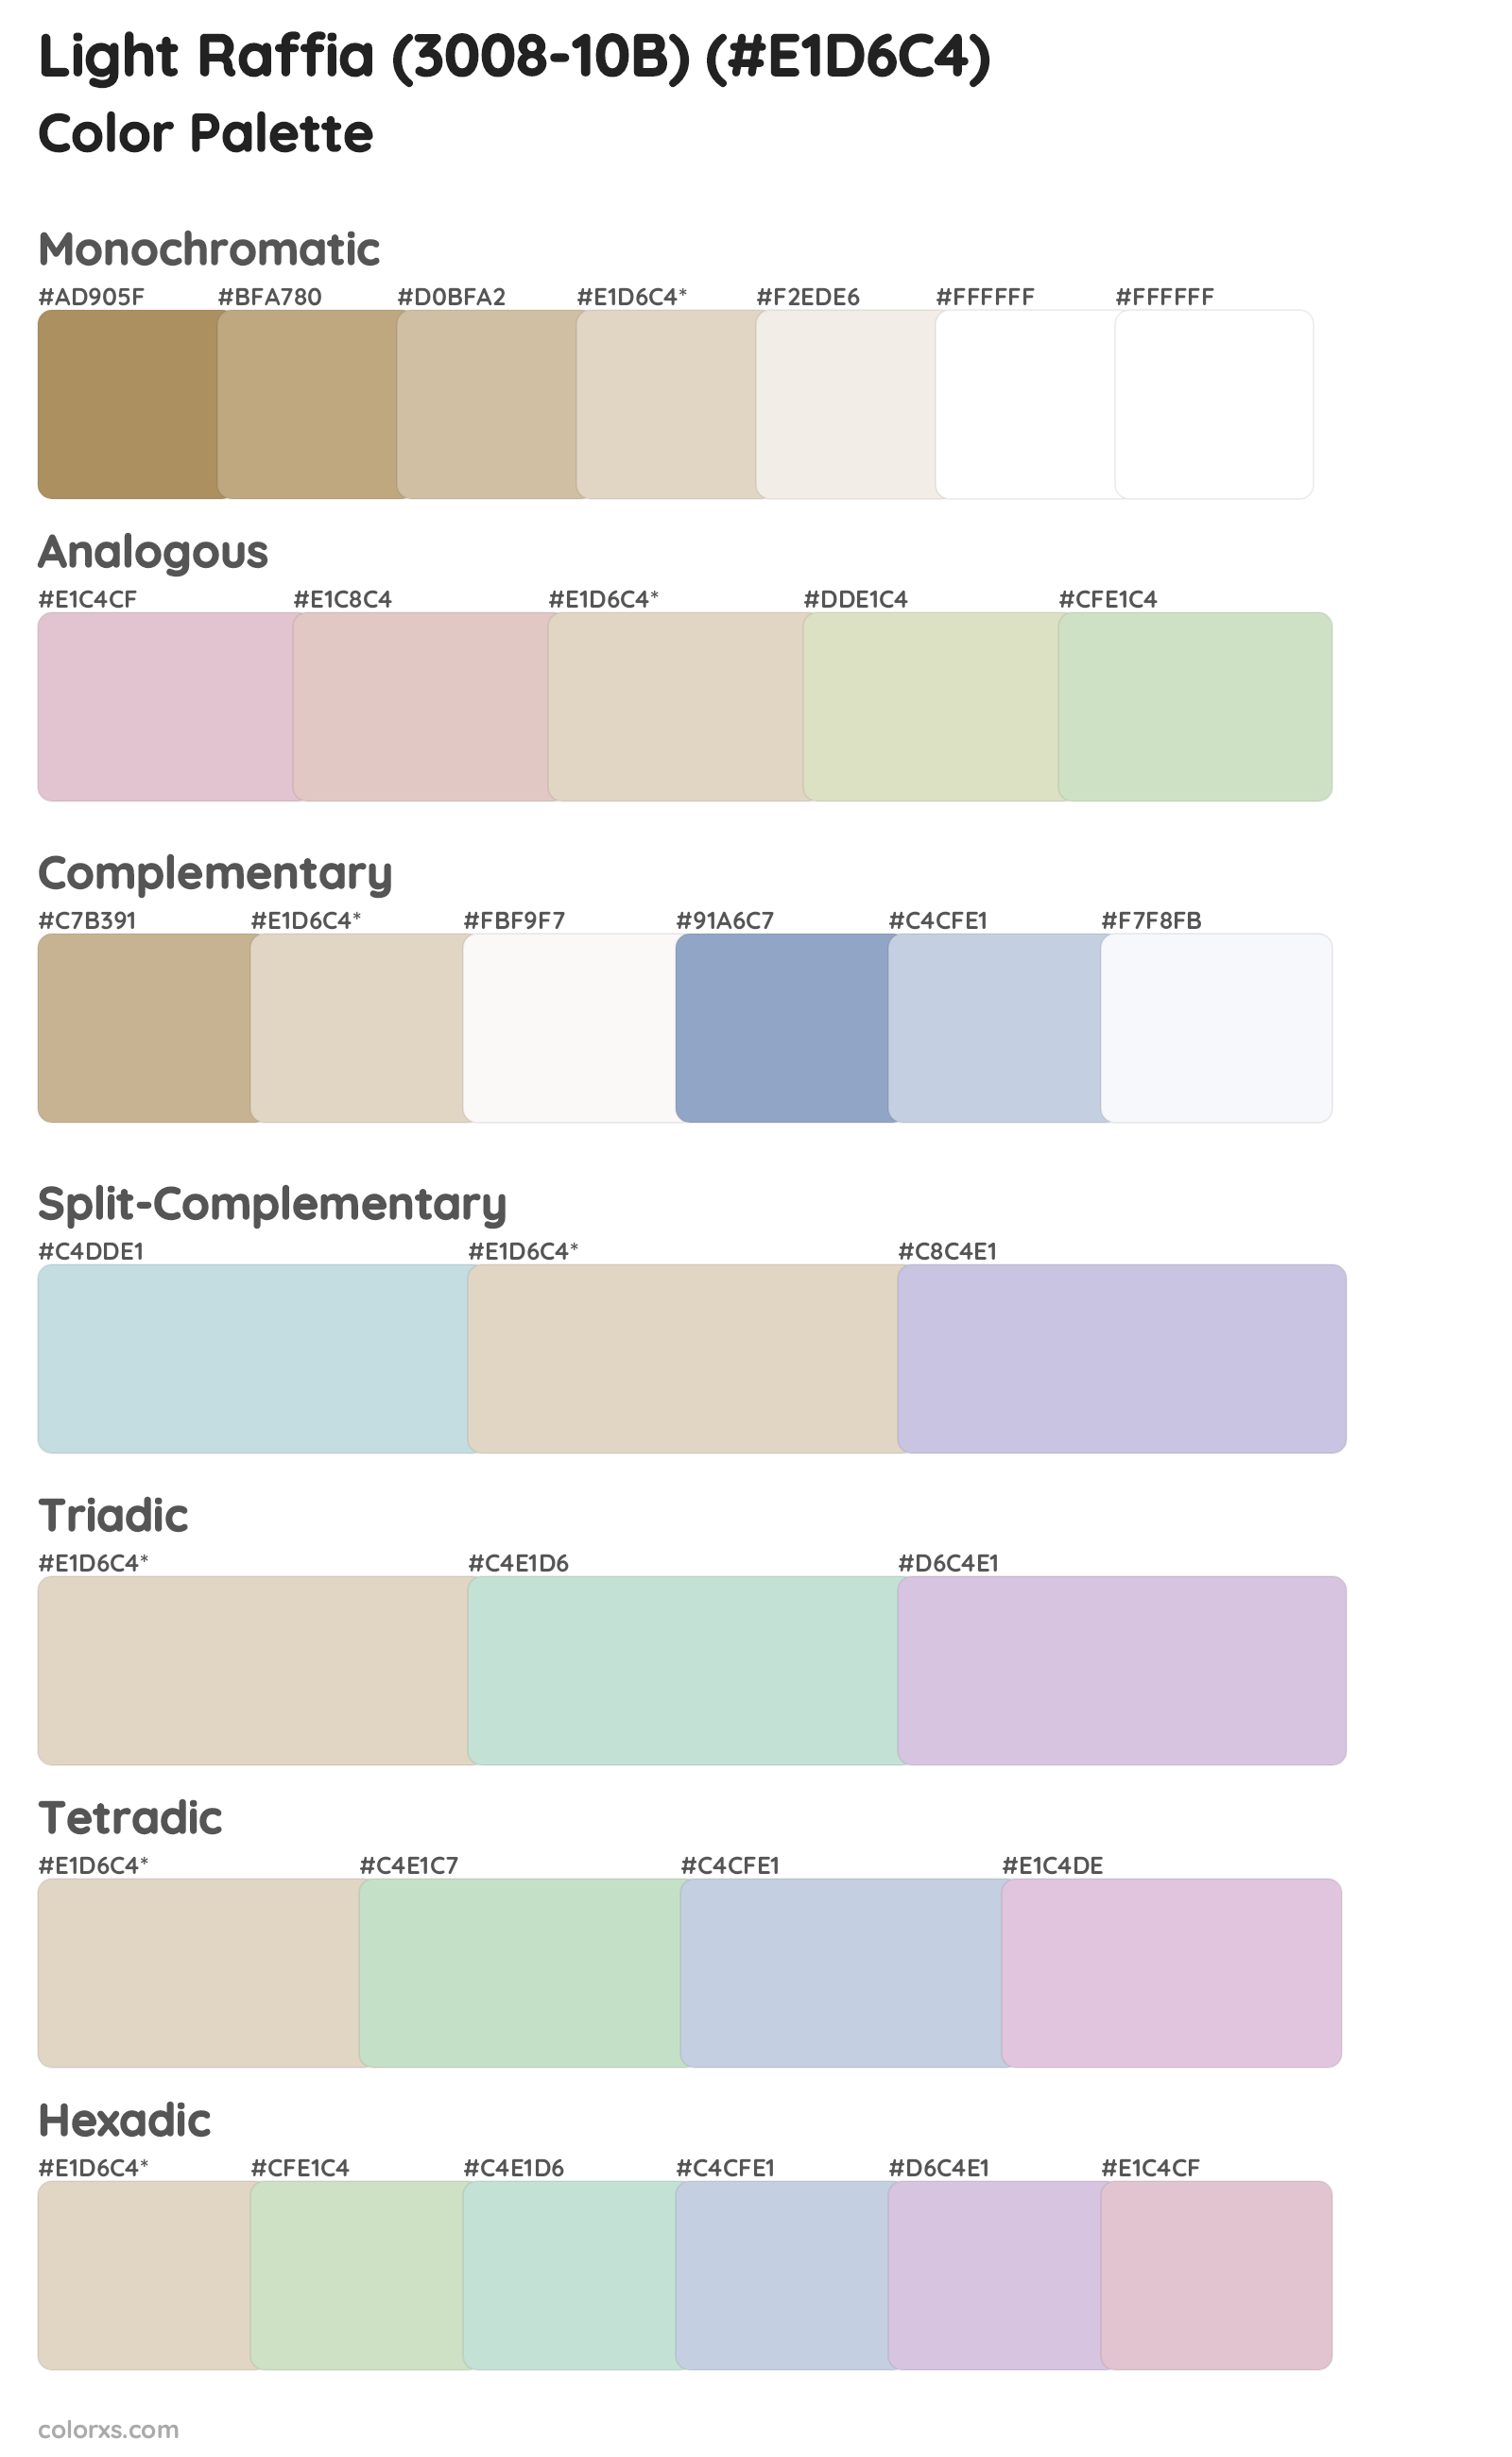 Light Raffia (3008-10B) Color Scheme Palettes